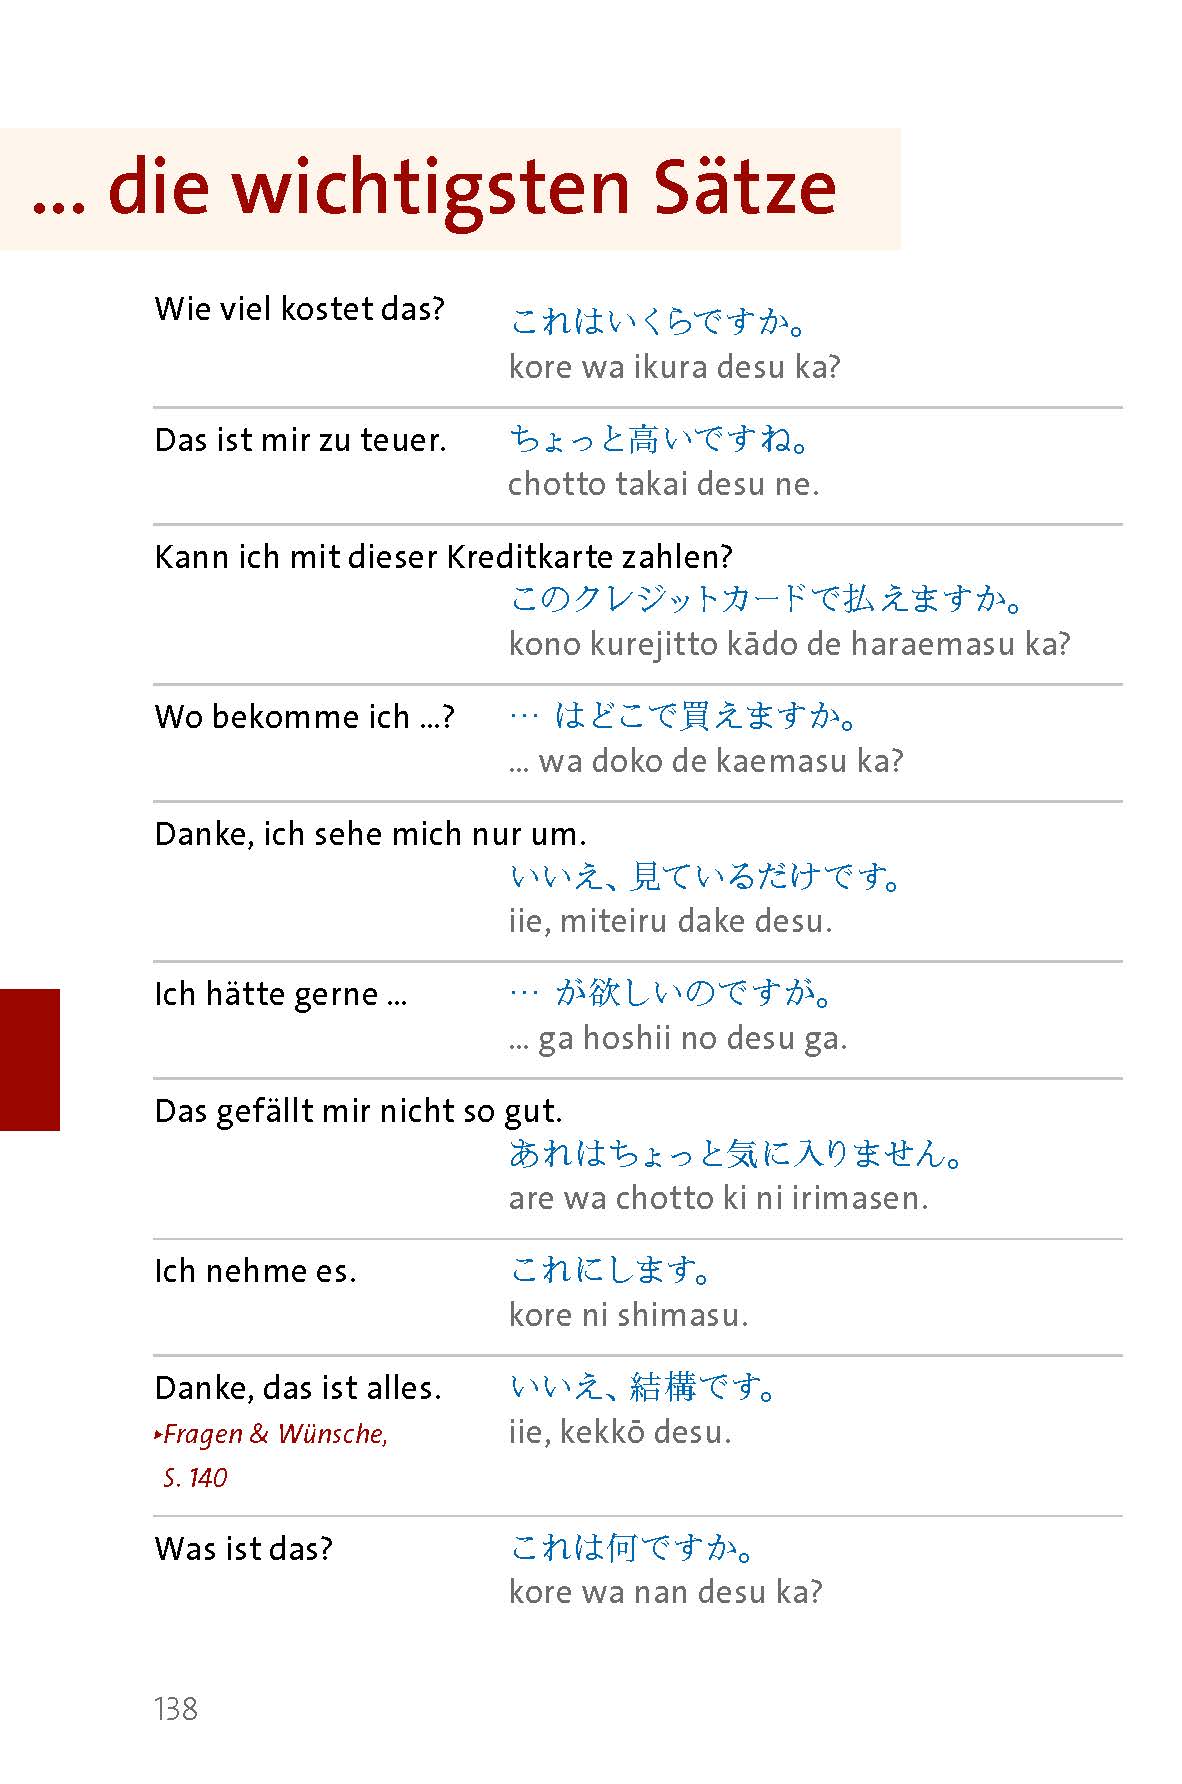 Langenscheidt Sprachführer Japanisch